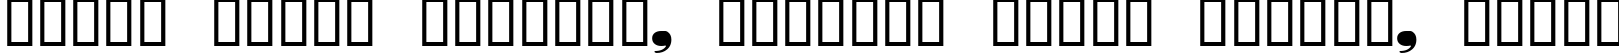 Пример написания шрифтом Nubian Regular текста на белорусском